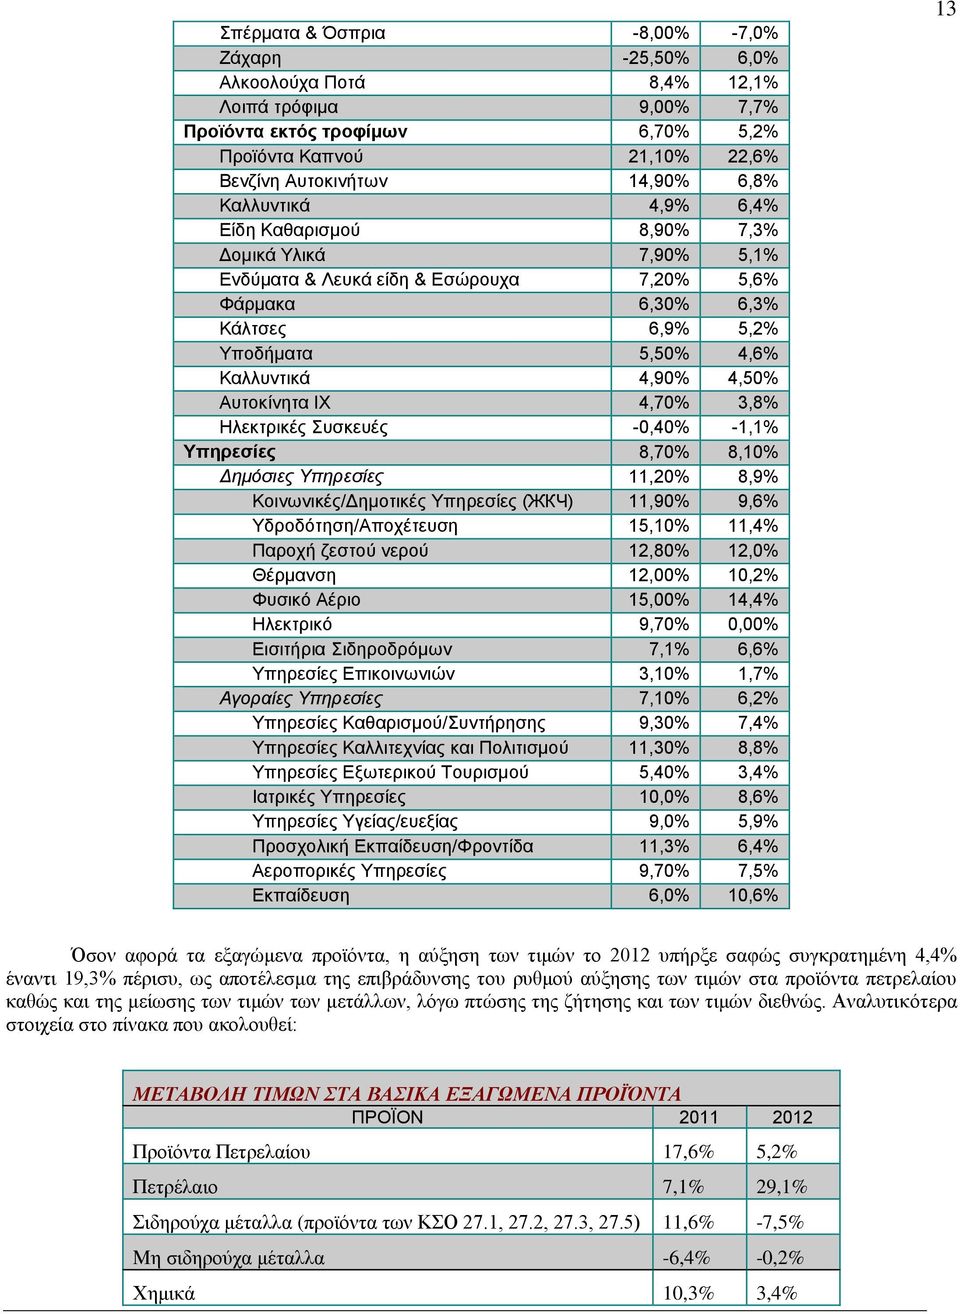 Αυτοκίνητα ΙΧ 4,70% 3,8% Ηλεκτρικές Συσκευές -0,40% -1,1% Υπηρεσίες 8,70% 8,10% Δημόσιες Υπηρεσίες 11,20% 8,9% Κοινωνικές/Δημοτικές Υπηρεσίες (ЖКЧ) 11,90% 9,6% Υδροδότηση/Αποχέτευση 15,10% 11,4%